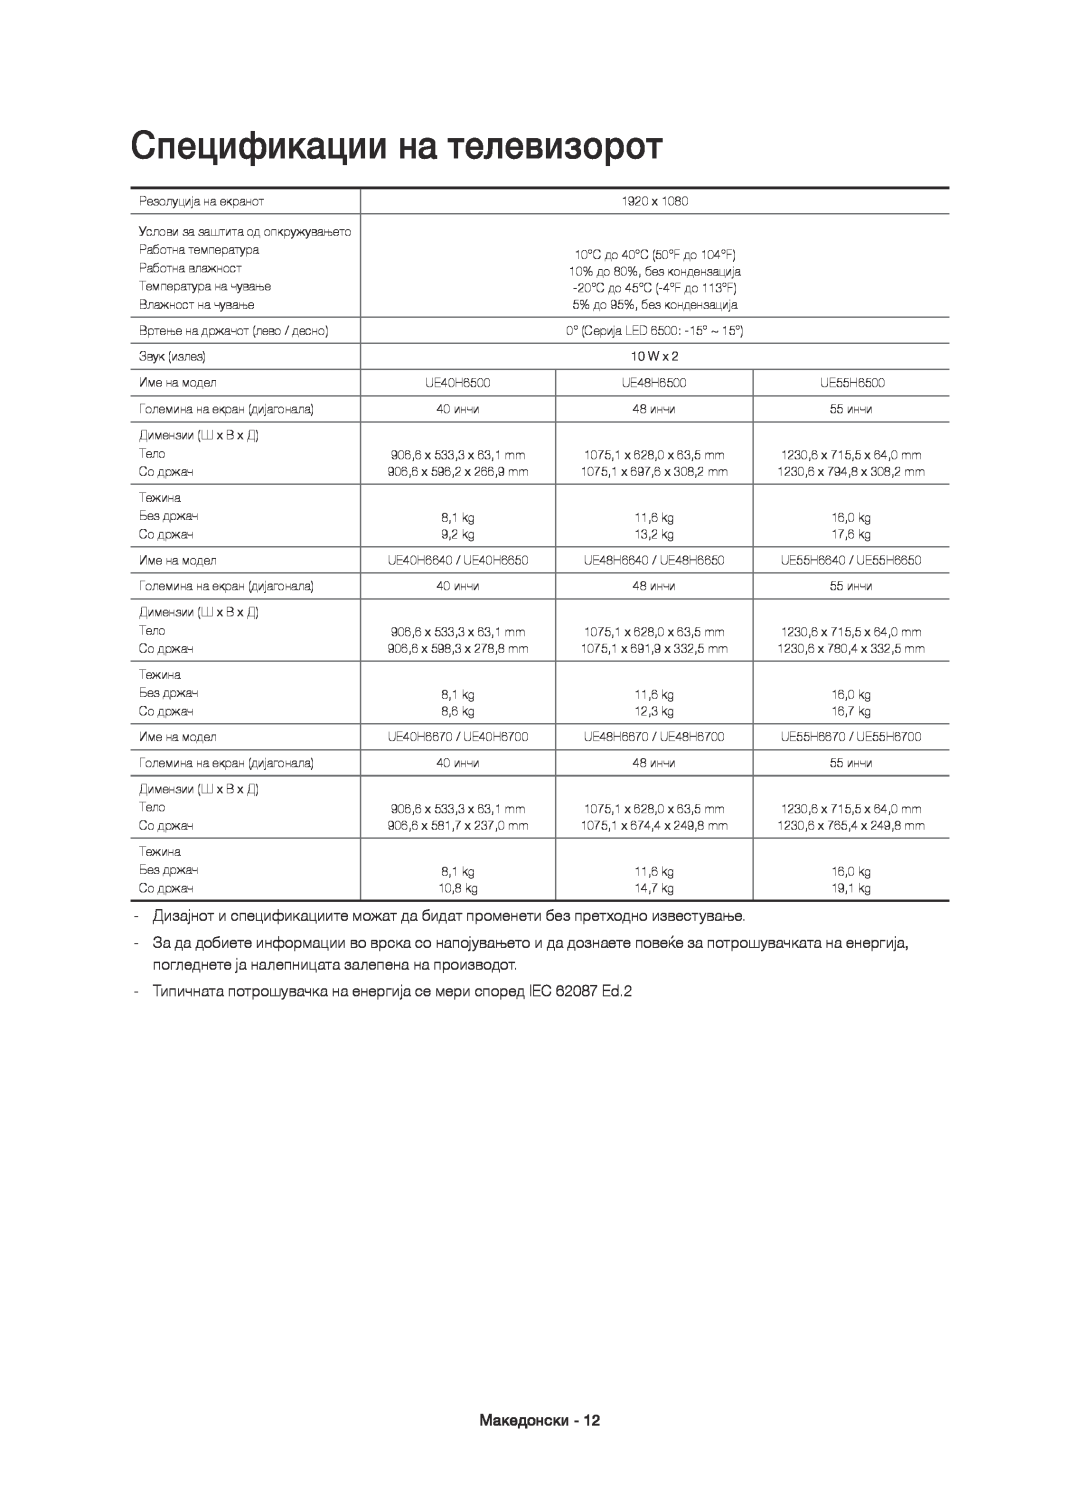 Samsung UE48H6500SLXXH manual Спецификации на телевизорот, Типичната потрошувачка на енергија се мери според IEC 62087 Ed.2 